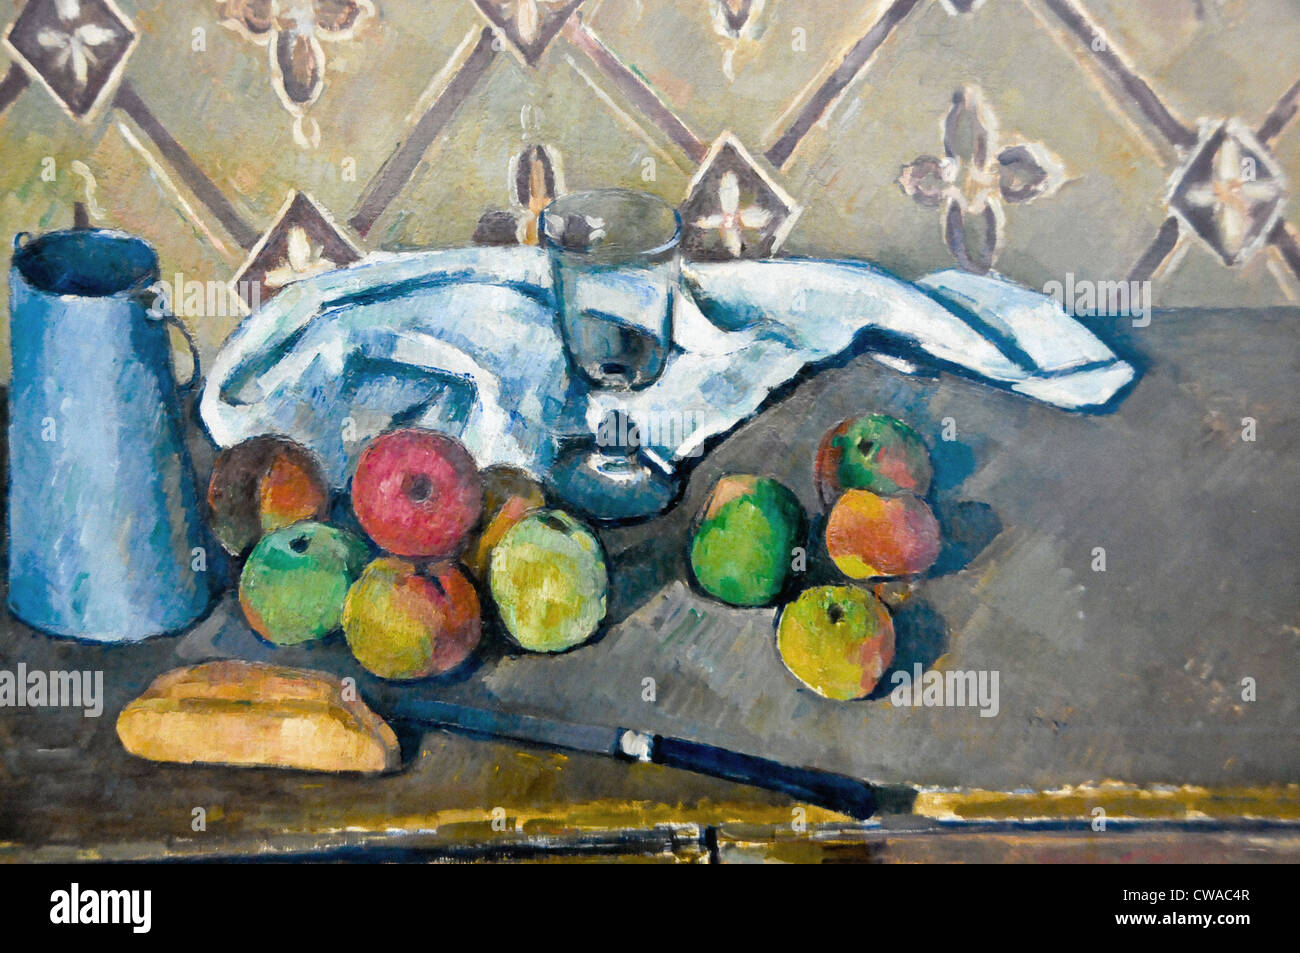 Paul Cézanne Fruits, serviette et boite a lait 1881 Musée de l'Orangerie - Paris Stock Photo